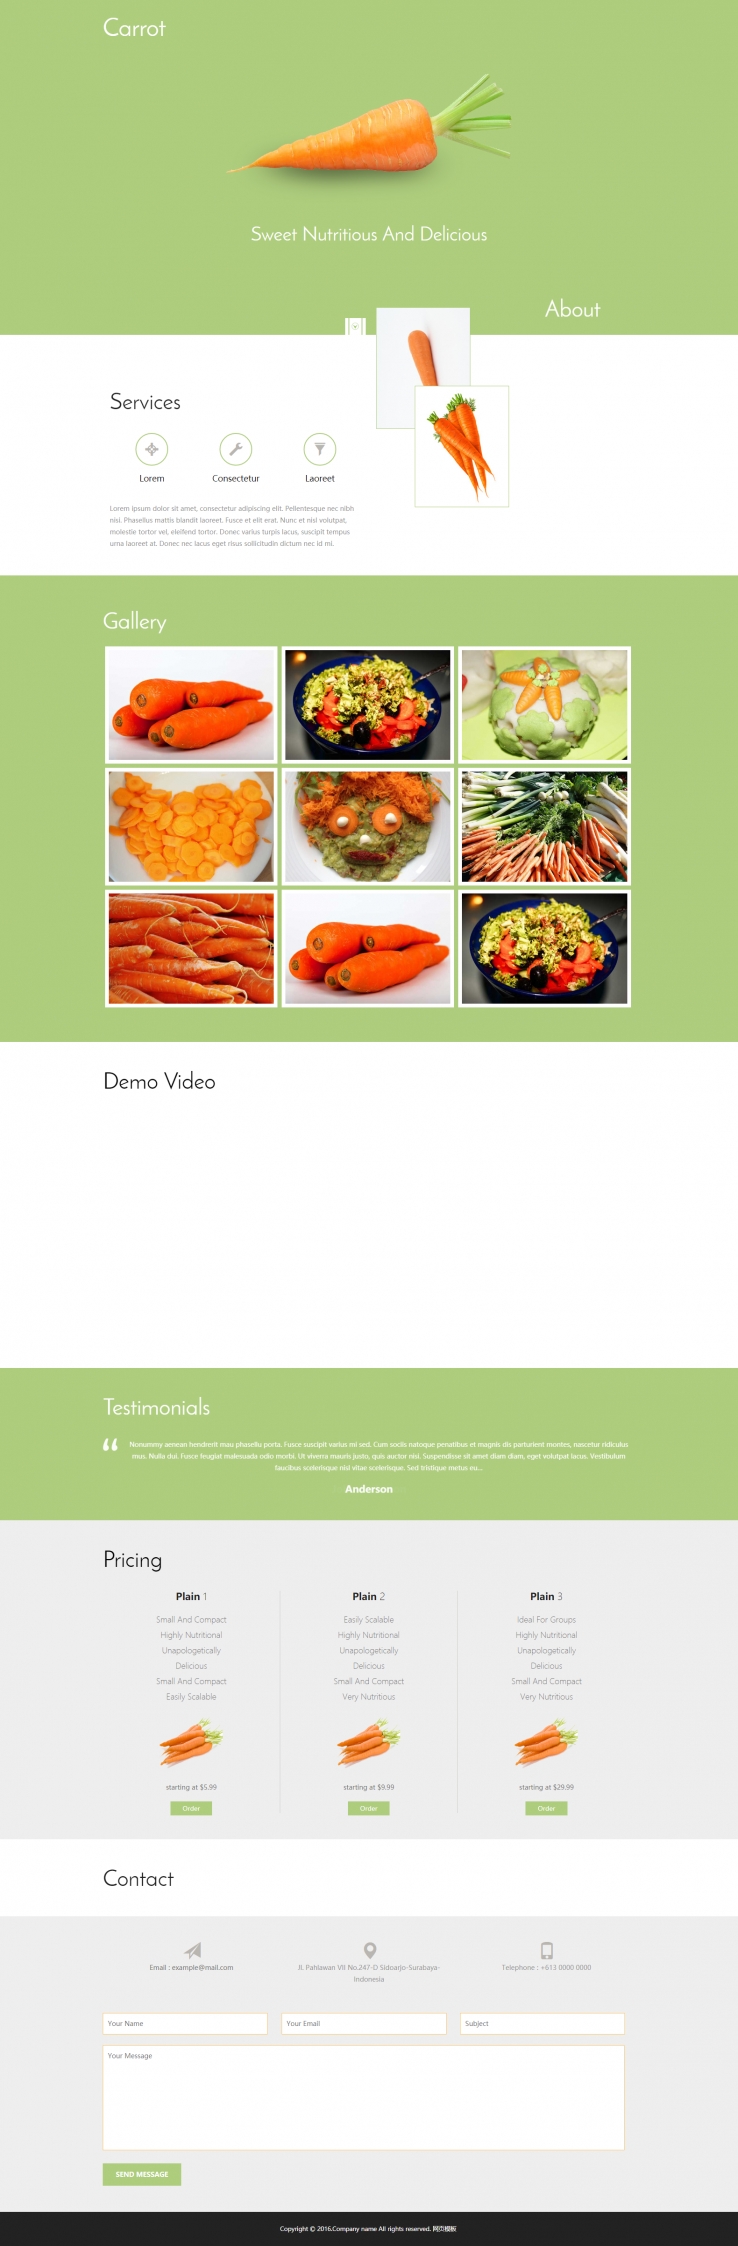 绿色宽屏风格的胡萝卜主题蔬菜网站模板